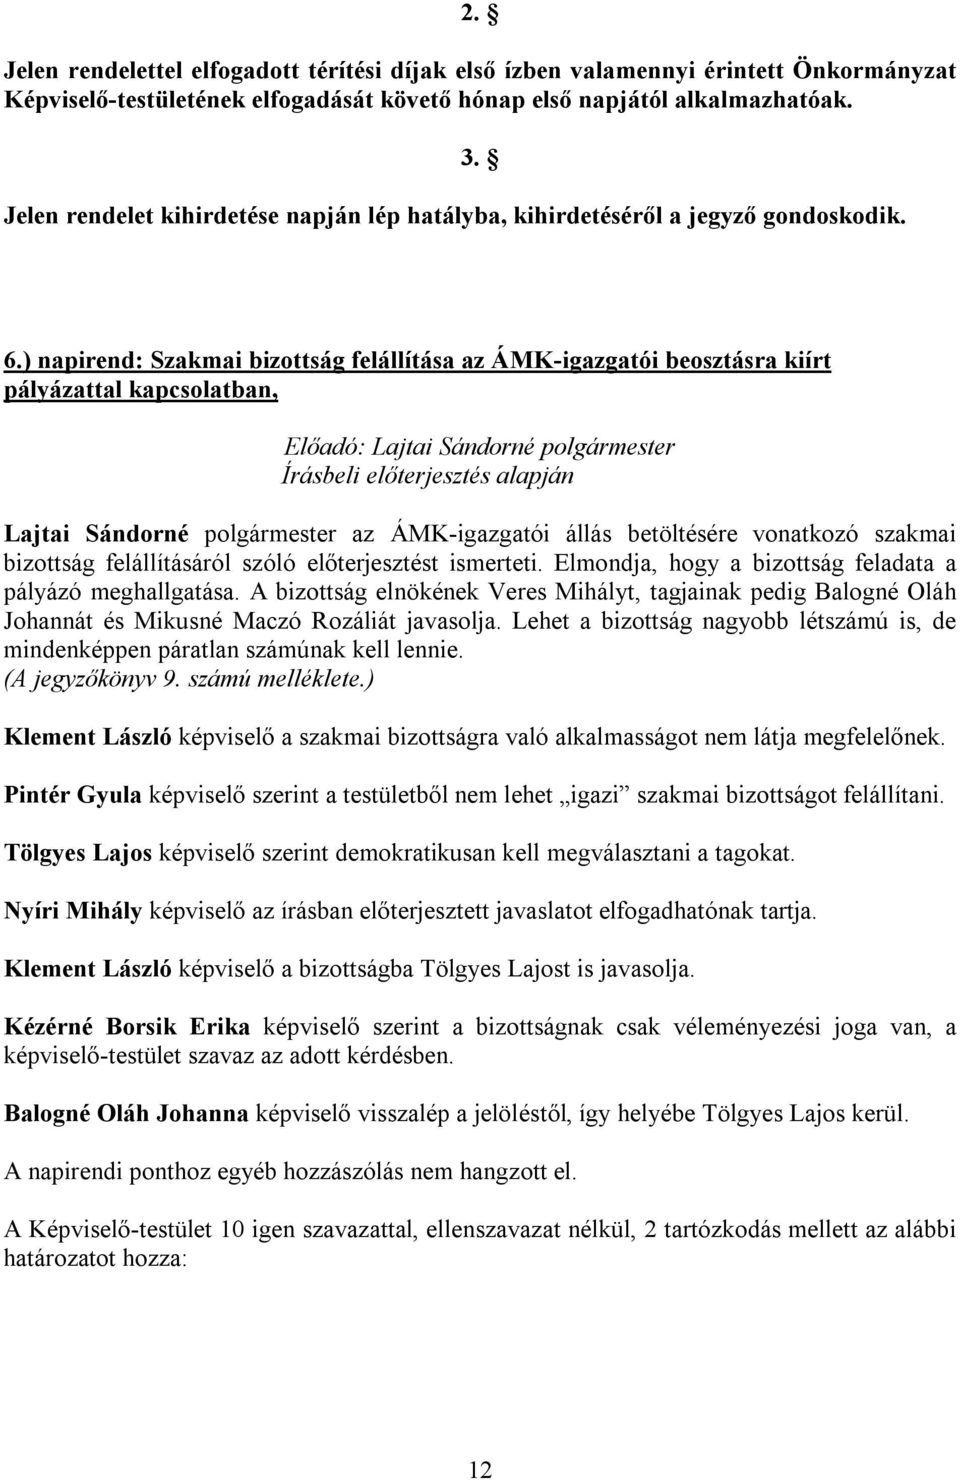 ) napirend: Szakmai bizottság felállítása az ÁMK-igazgatói beosztásra kiírt pályázattal kapcsolatban, Lajtai Sándorné polgármester az ÁMK-igazgatói állás betöltésére vonatkozó szakmai bizottság